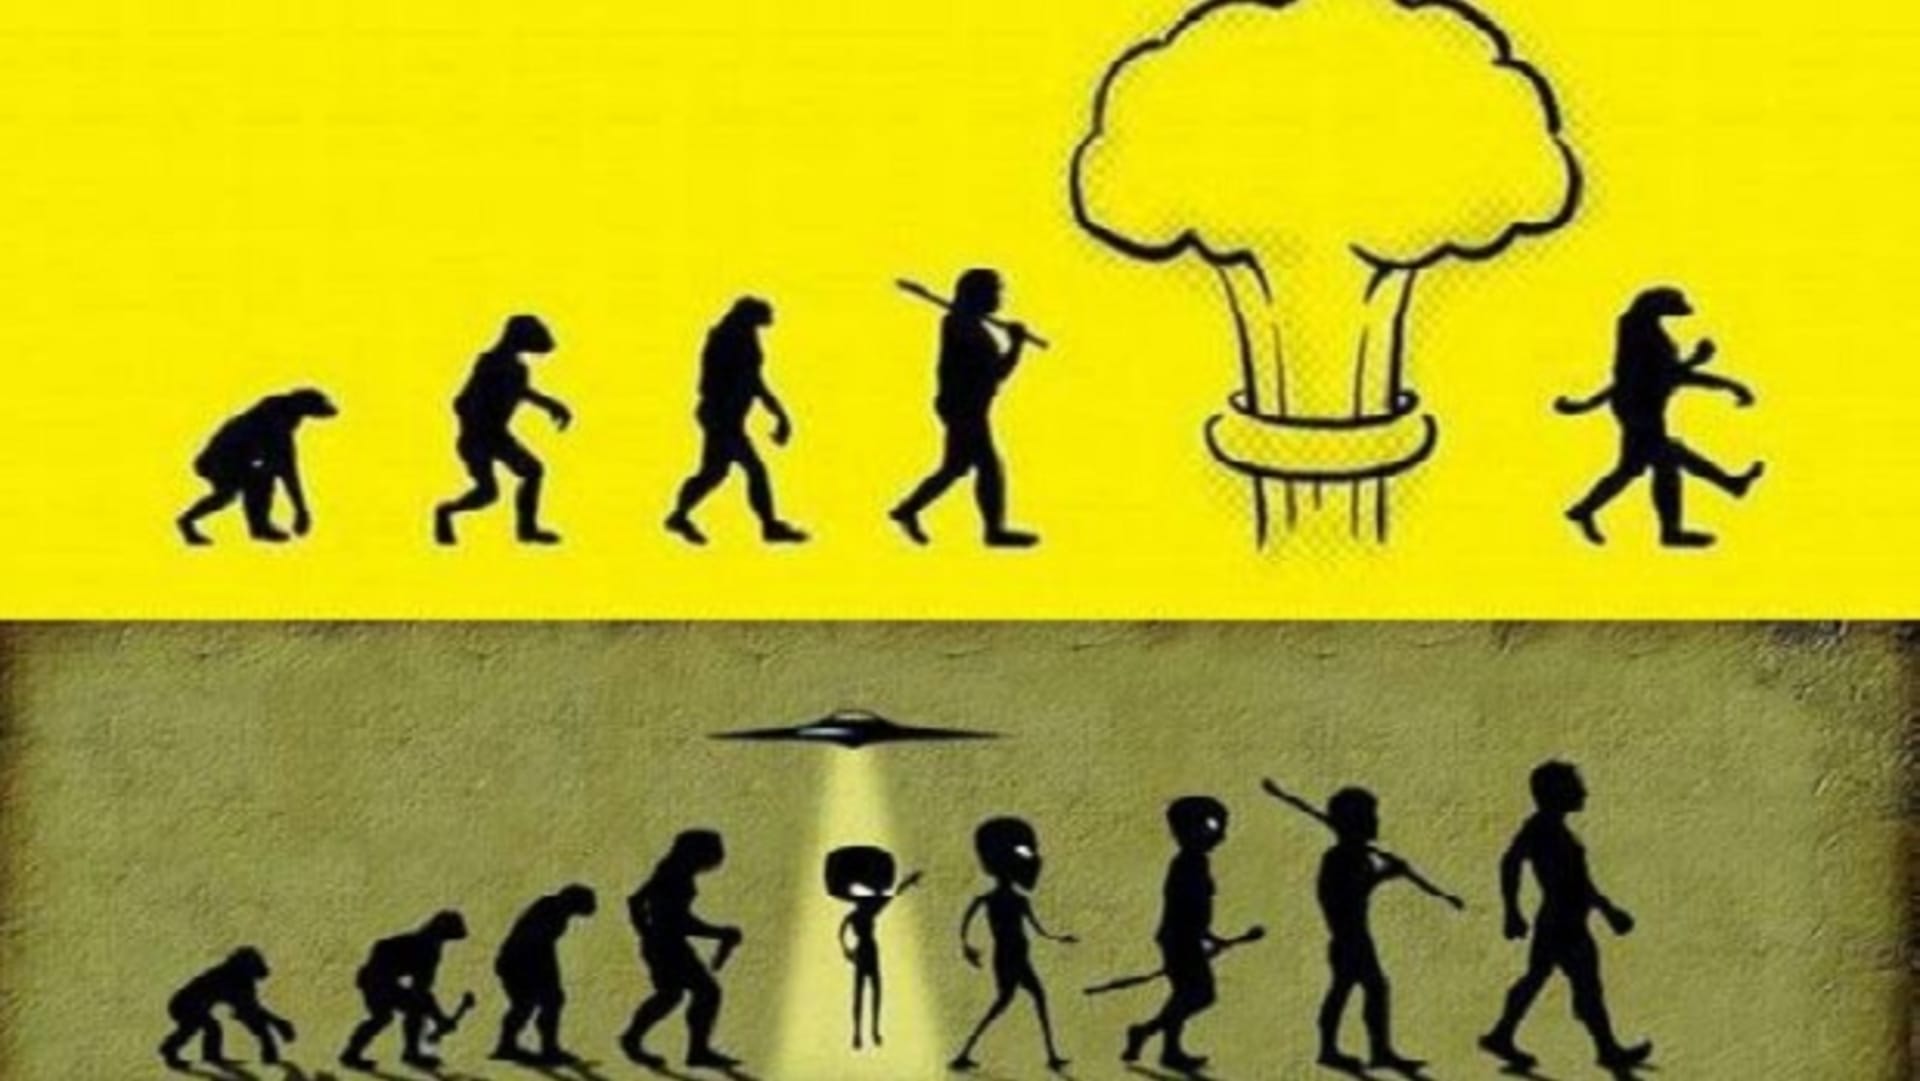 Evoluce vtipně